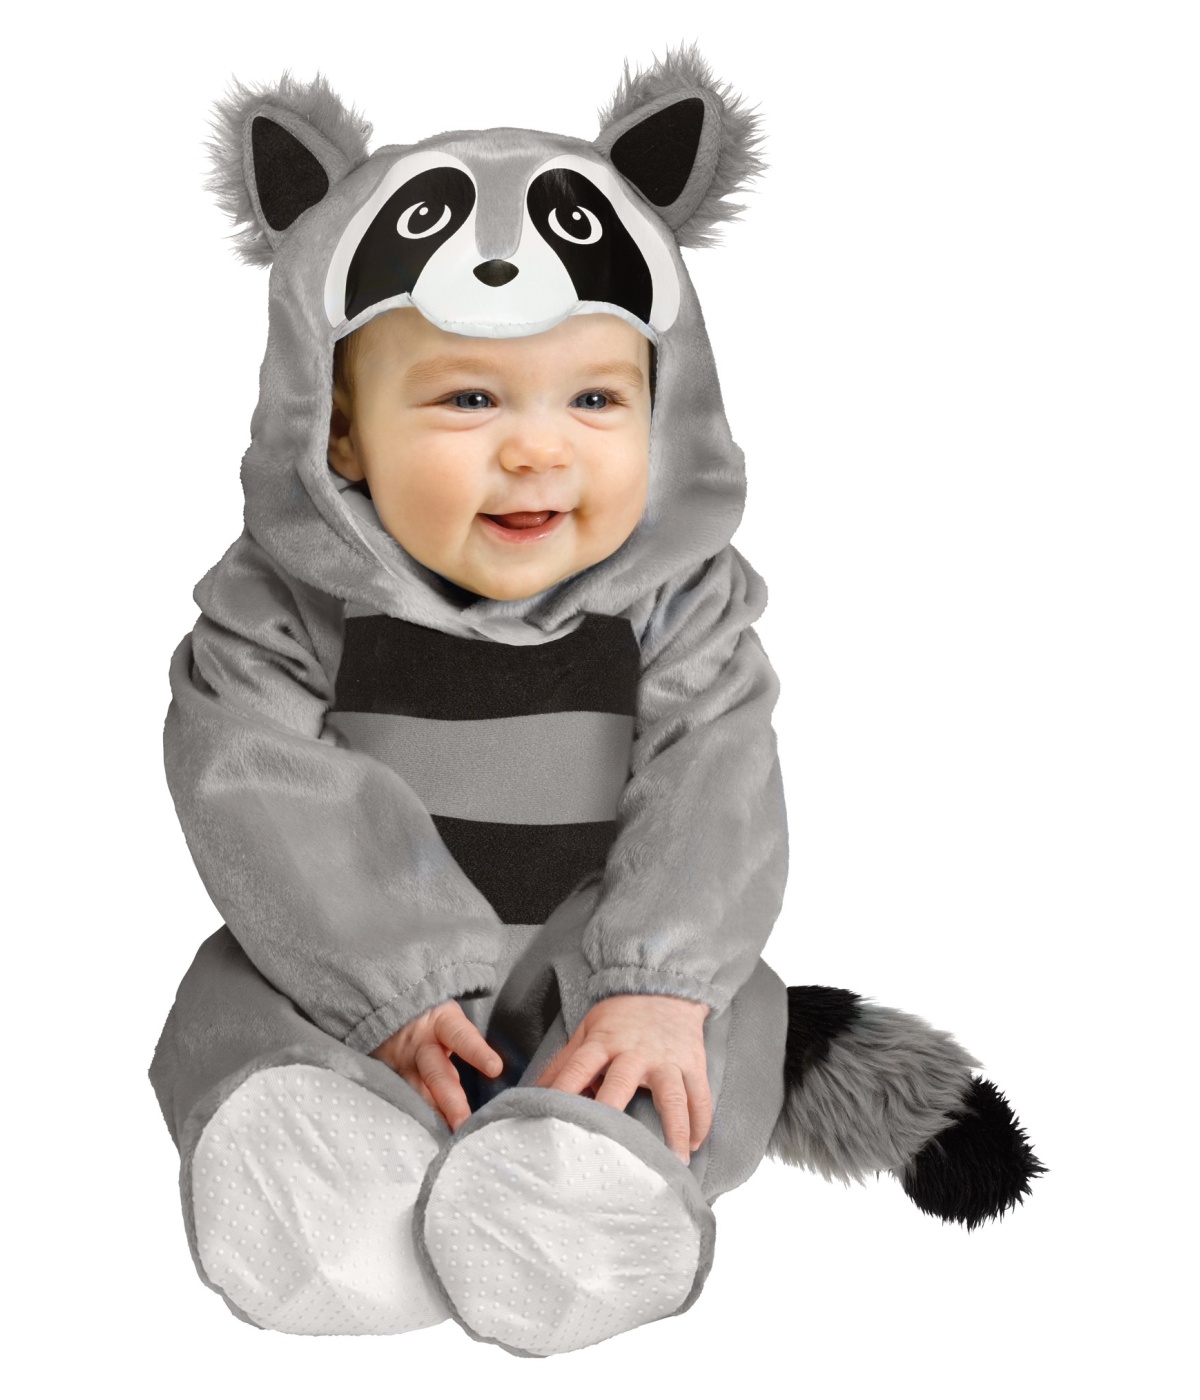  Boys Baby Raccoon Costume